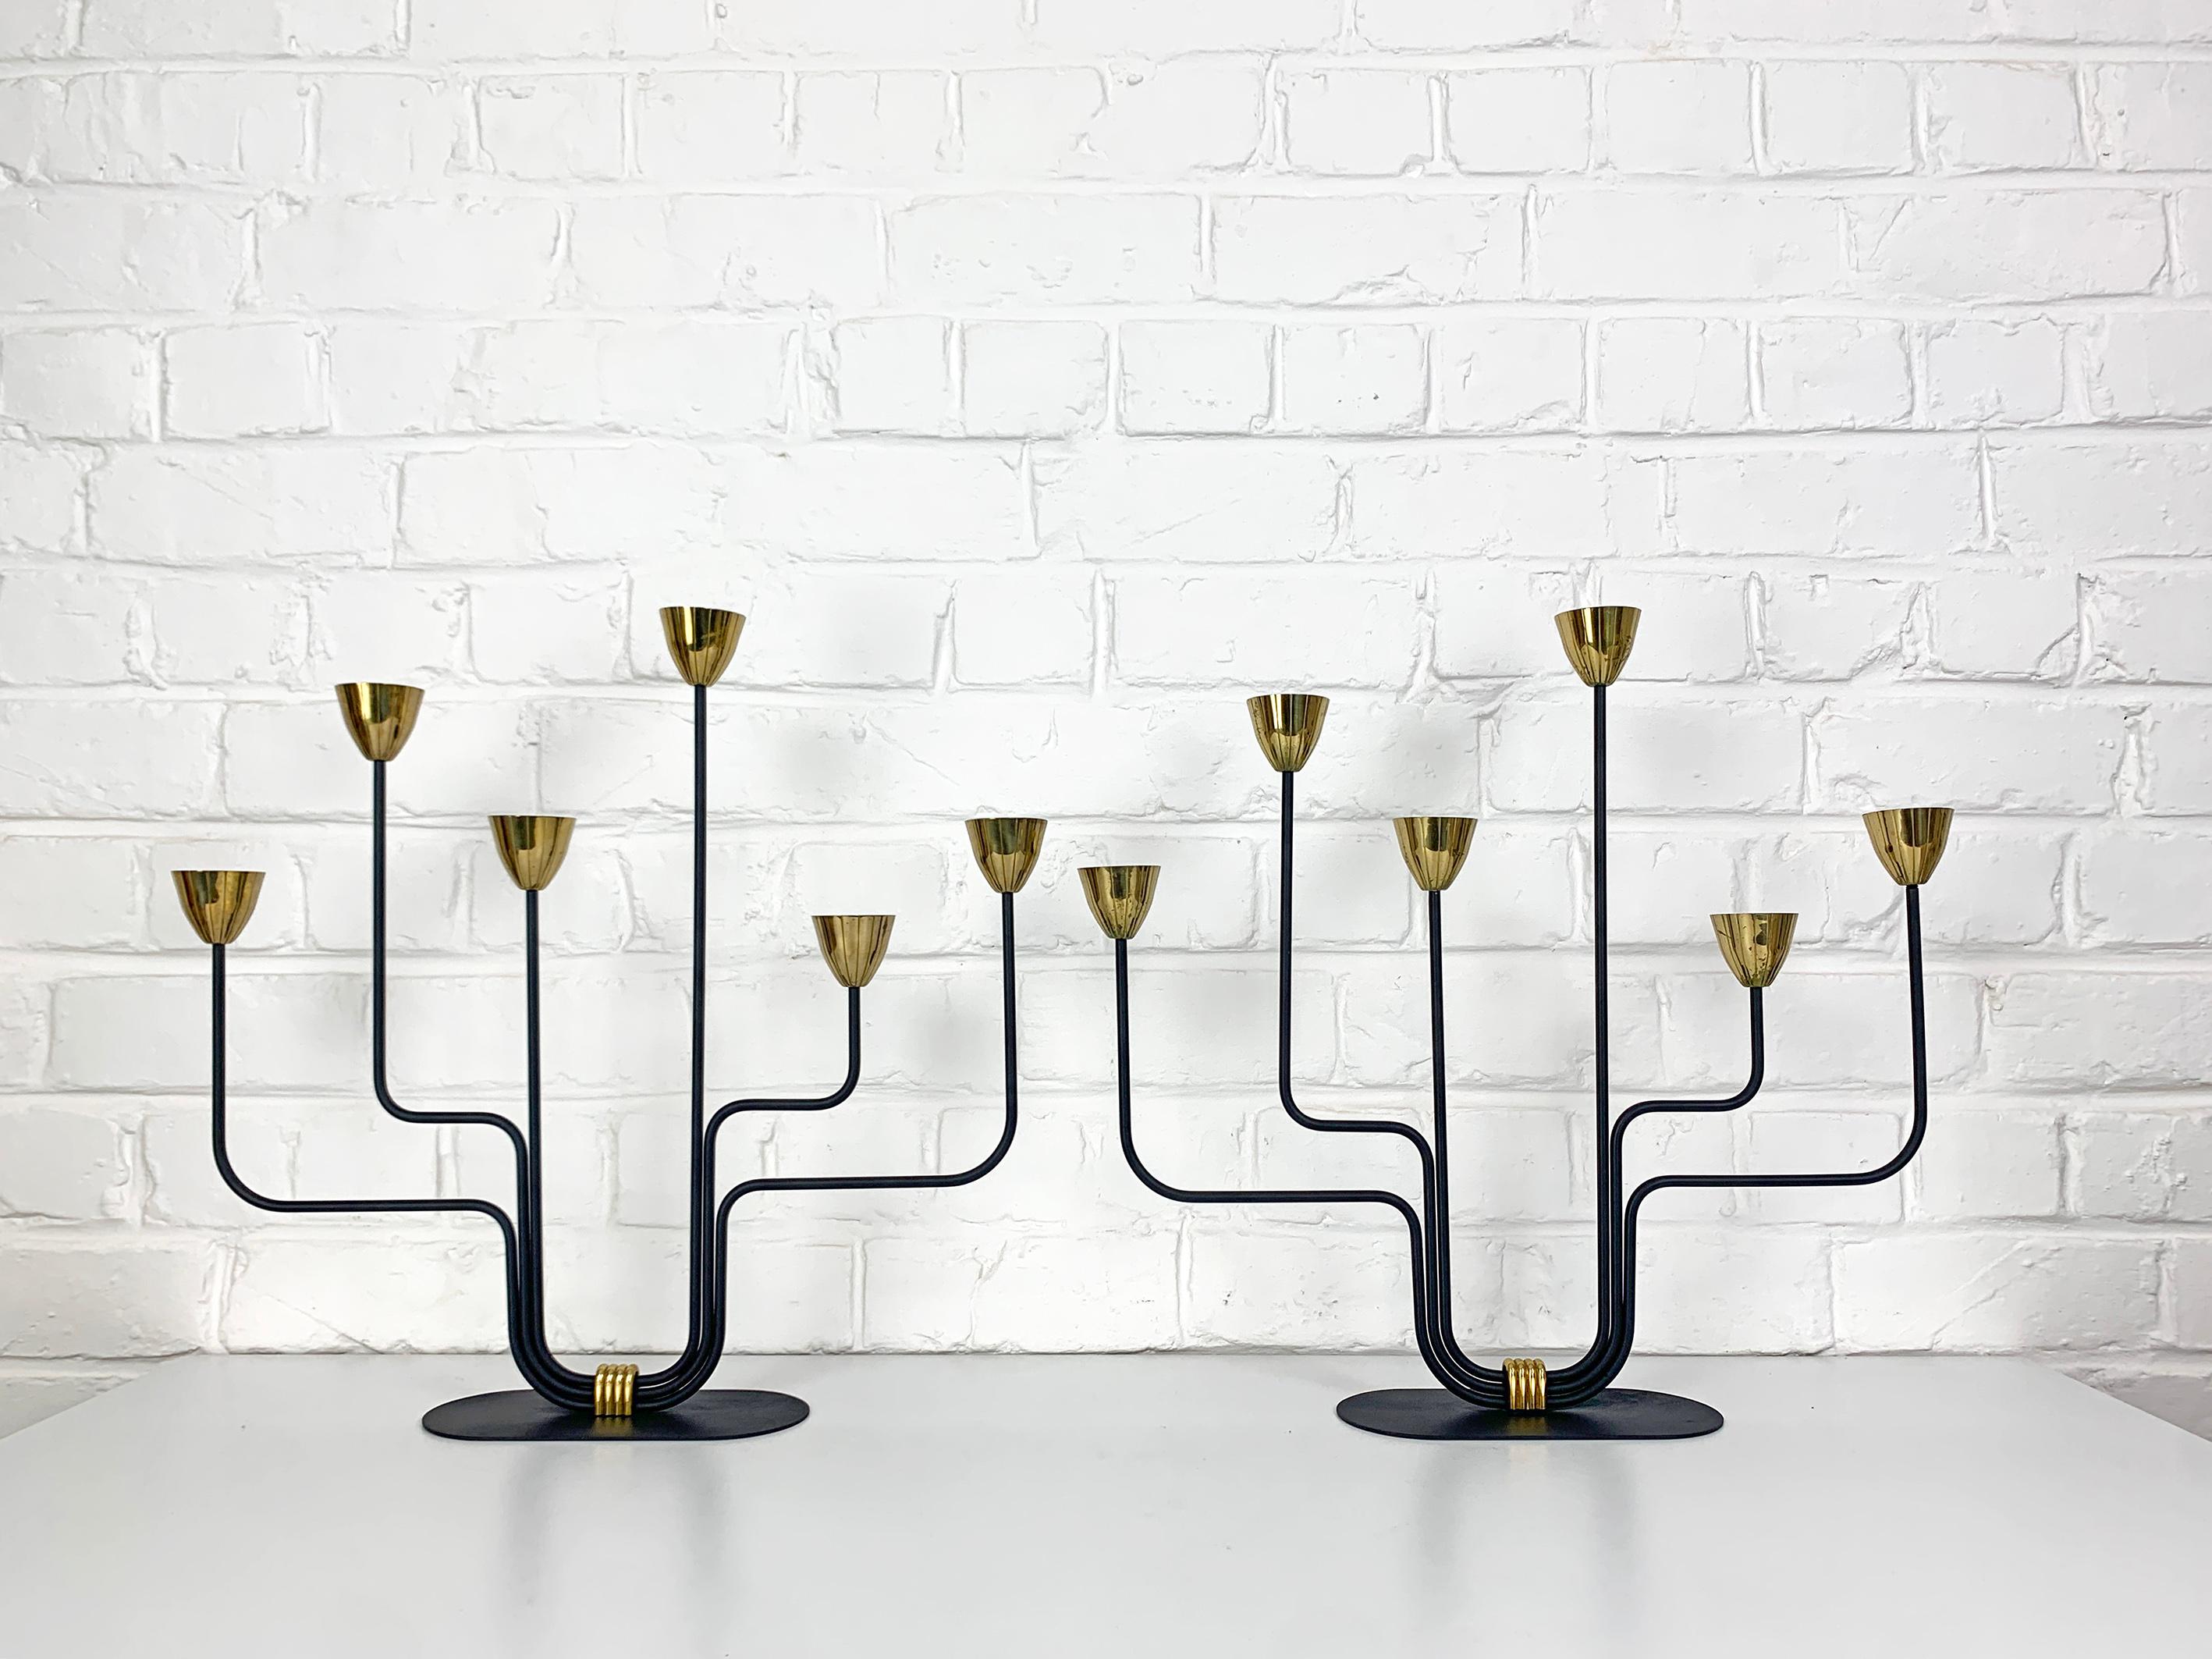 Paar schwedische modernistische Kerzenhalter von Gunnar Ander. Produziert von Ystad-Metall in der schwedischen Stadt Ystad. 

Stilisierte Blumen aus Messing auf 6 asymmetrischen, schwarz lackierten Stahlarmen. Das ist das große Modell, das viel